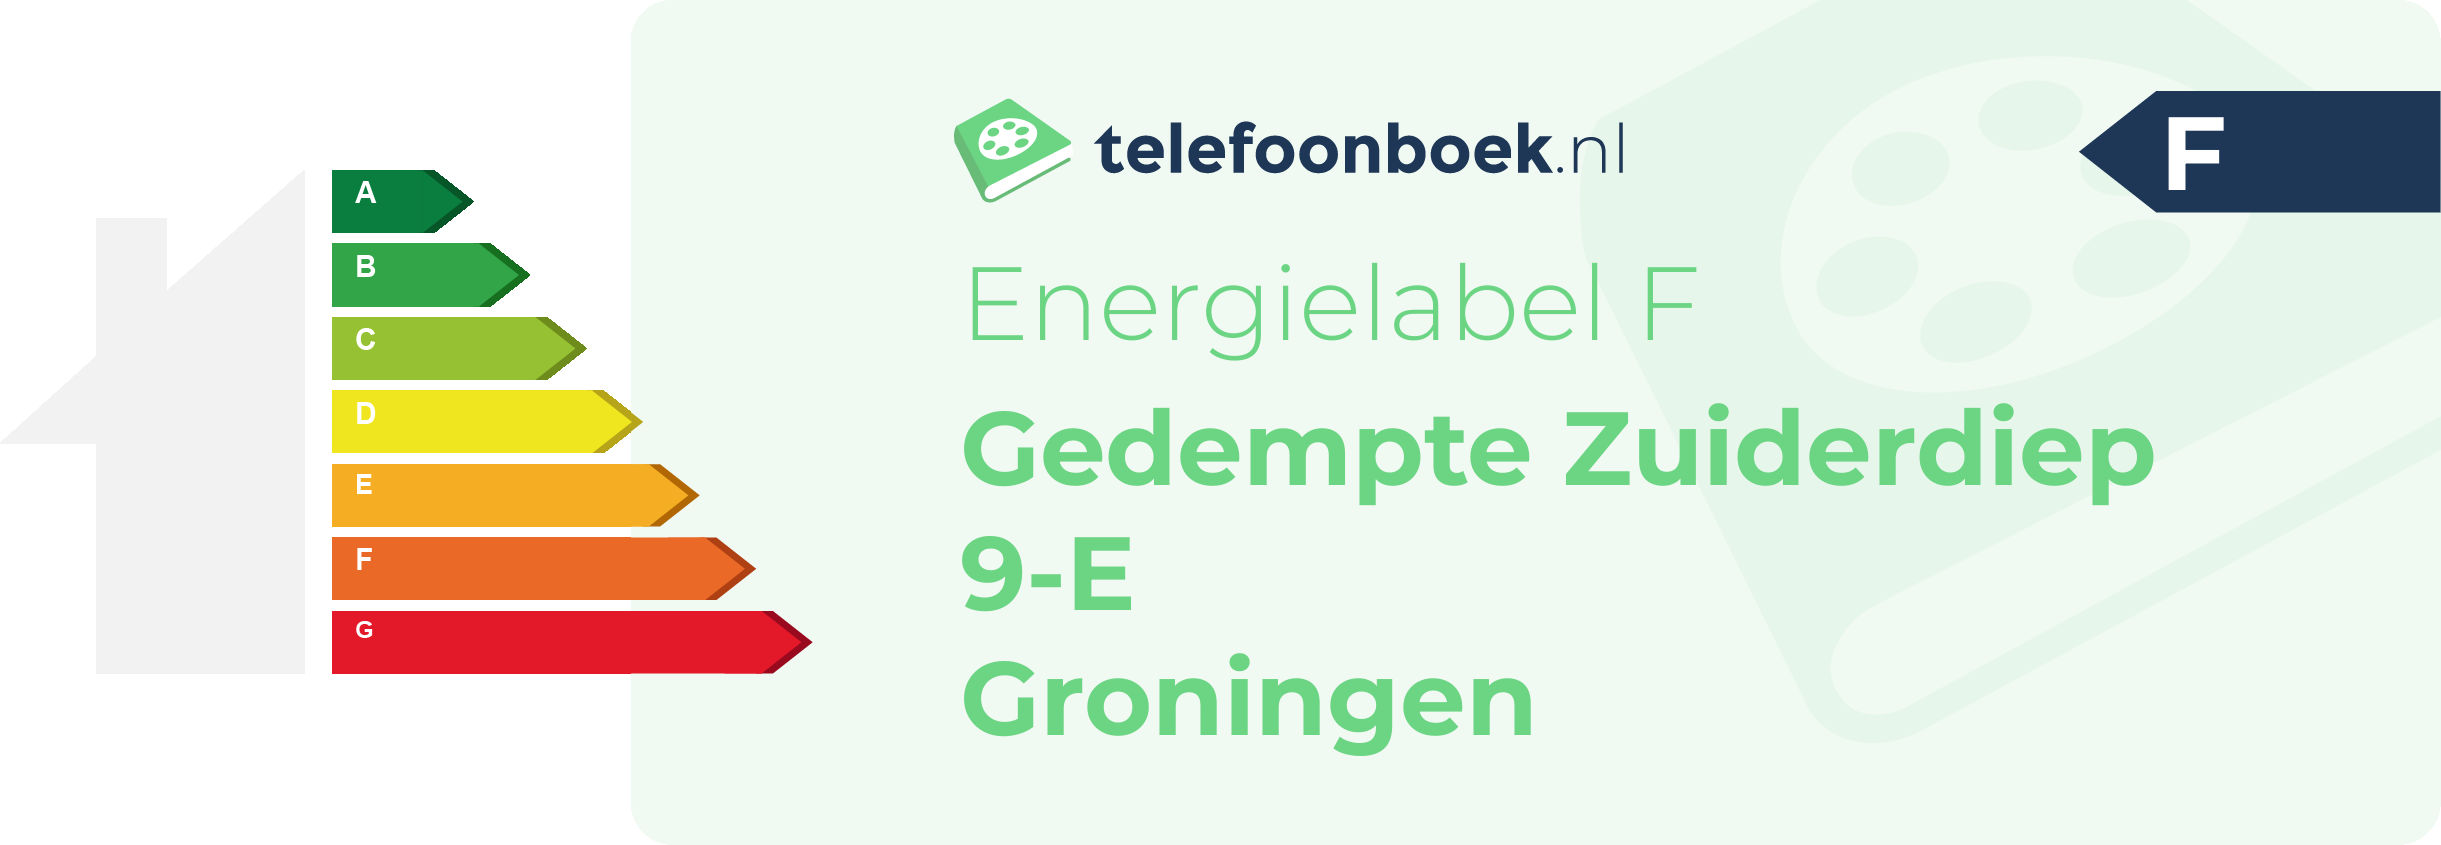 Energielabel Gedempte Zuiderdiep 9-E Groningen